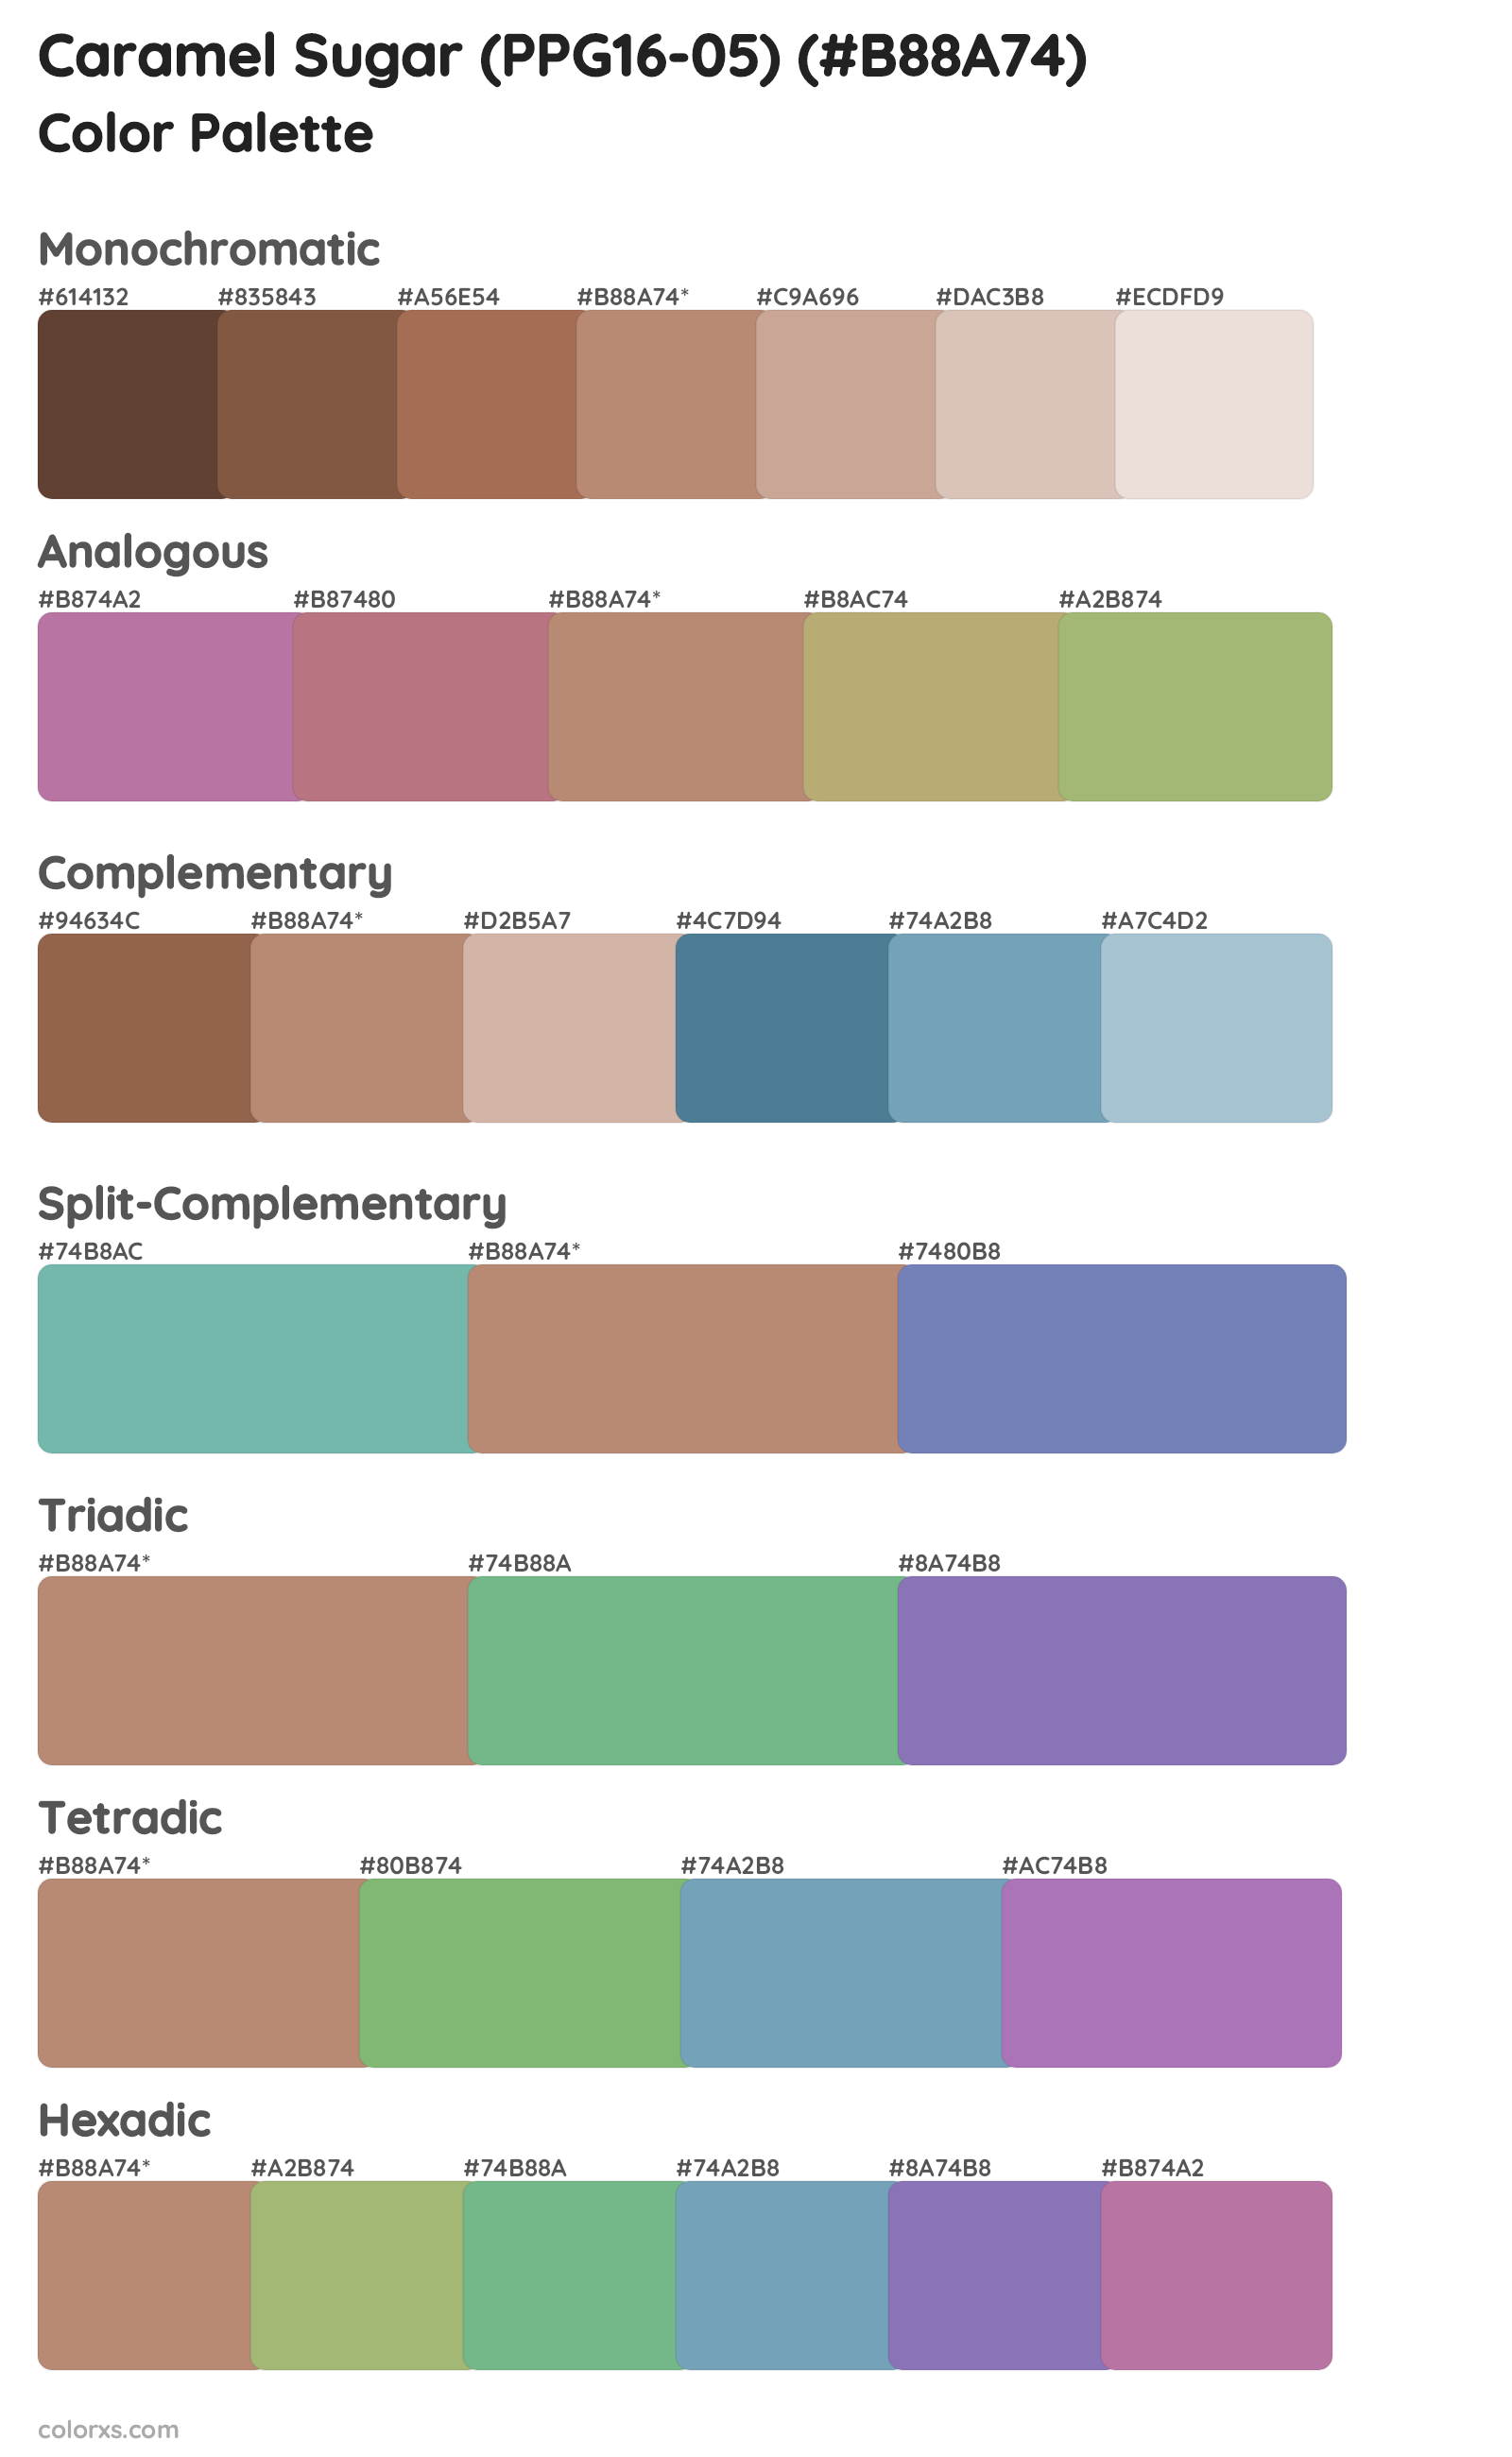 Caramel Sugar (PPG16-05) Color Scheme Palettes